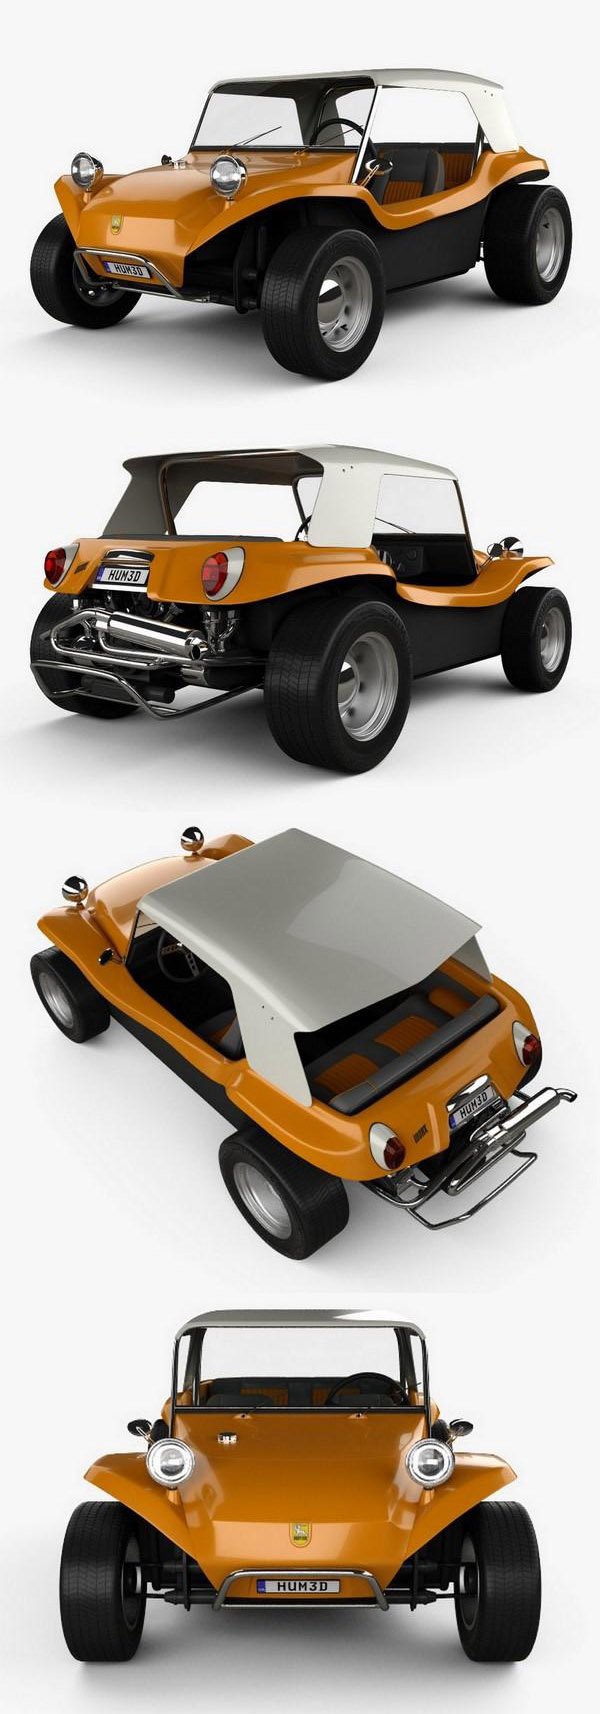 Volkswagen Buggy Meyers Manx 1965